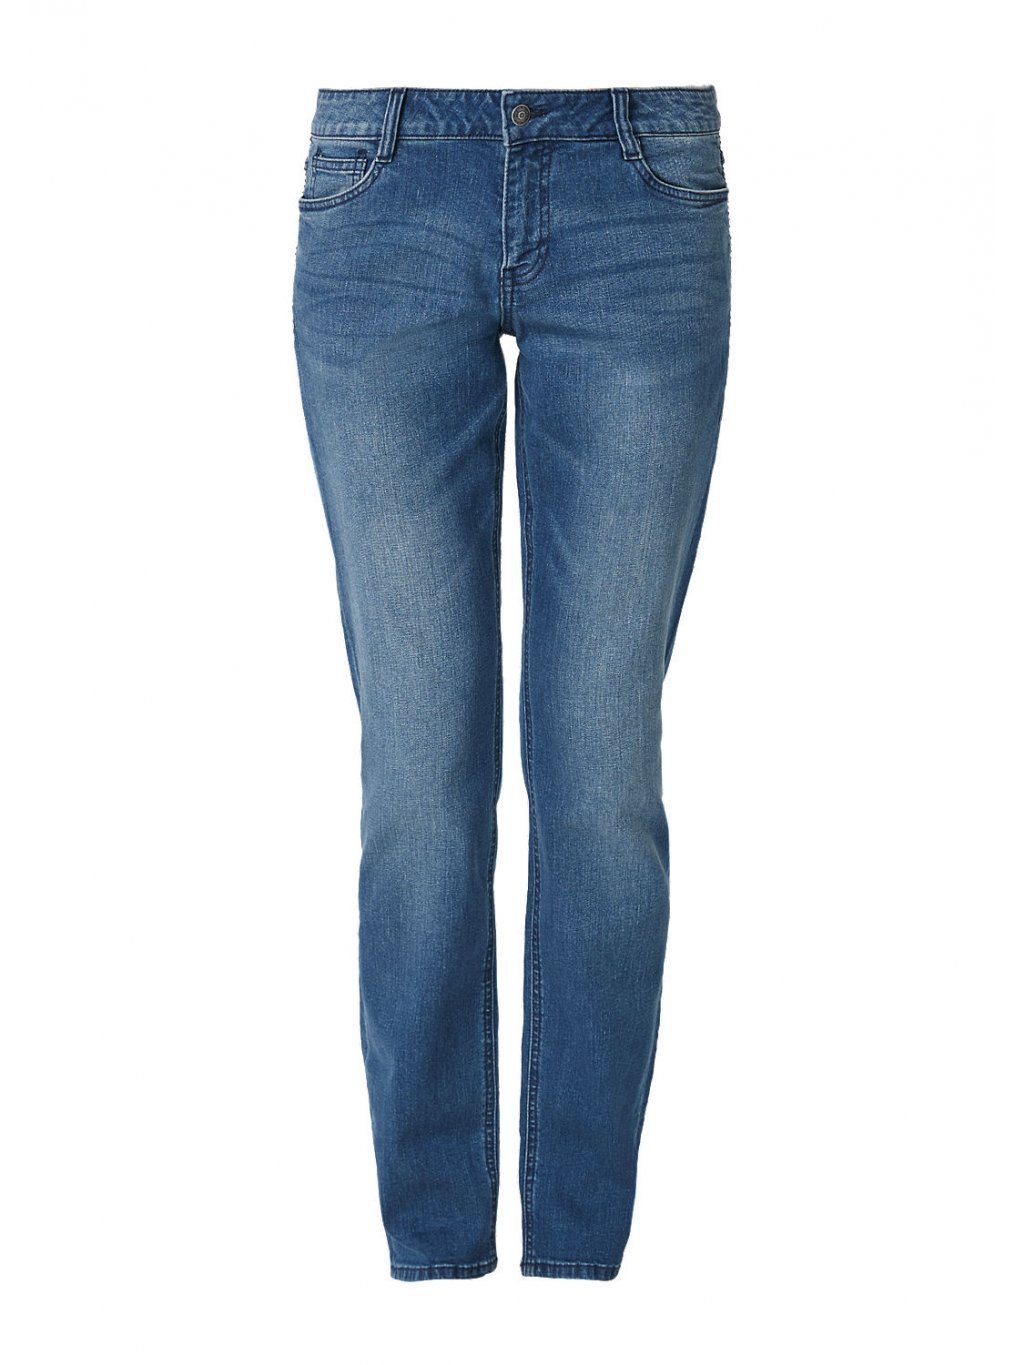 s.Oliver dámské strečové džíny Smart Straight modré (Velikost 44/32)